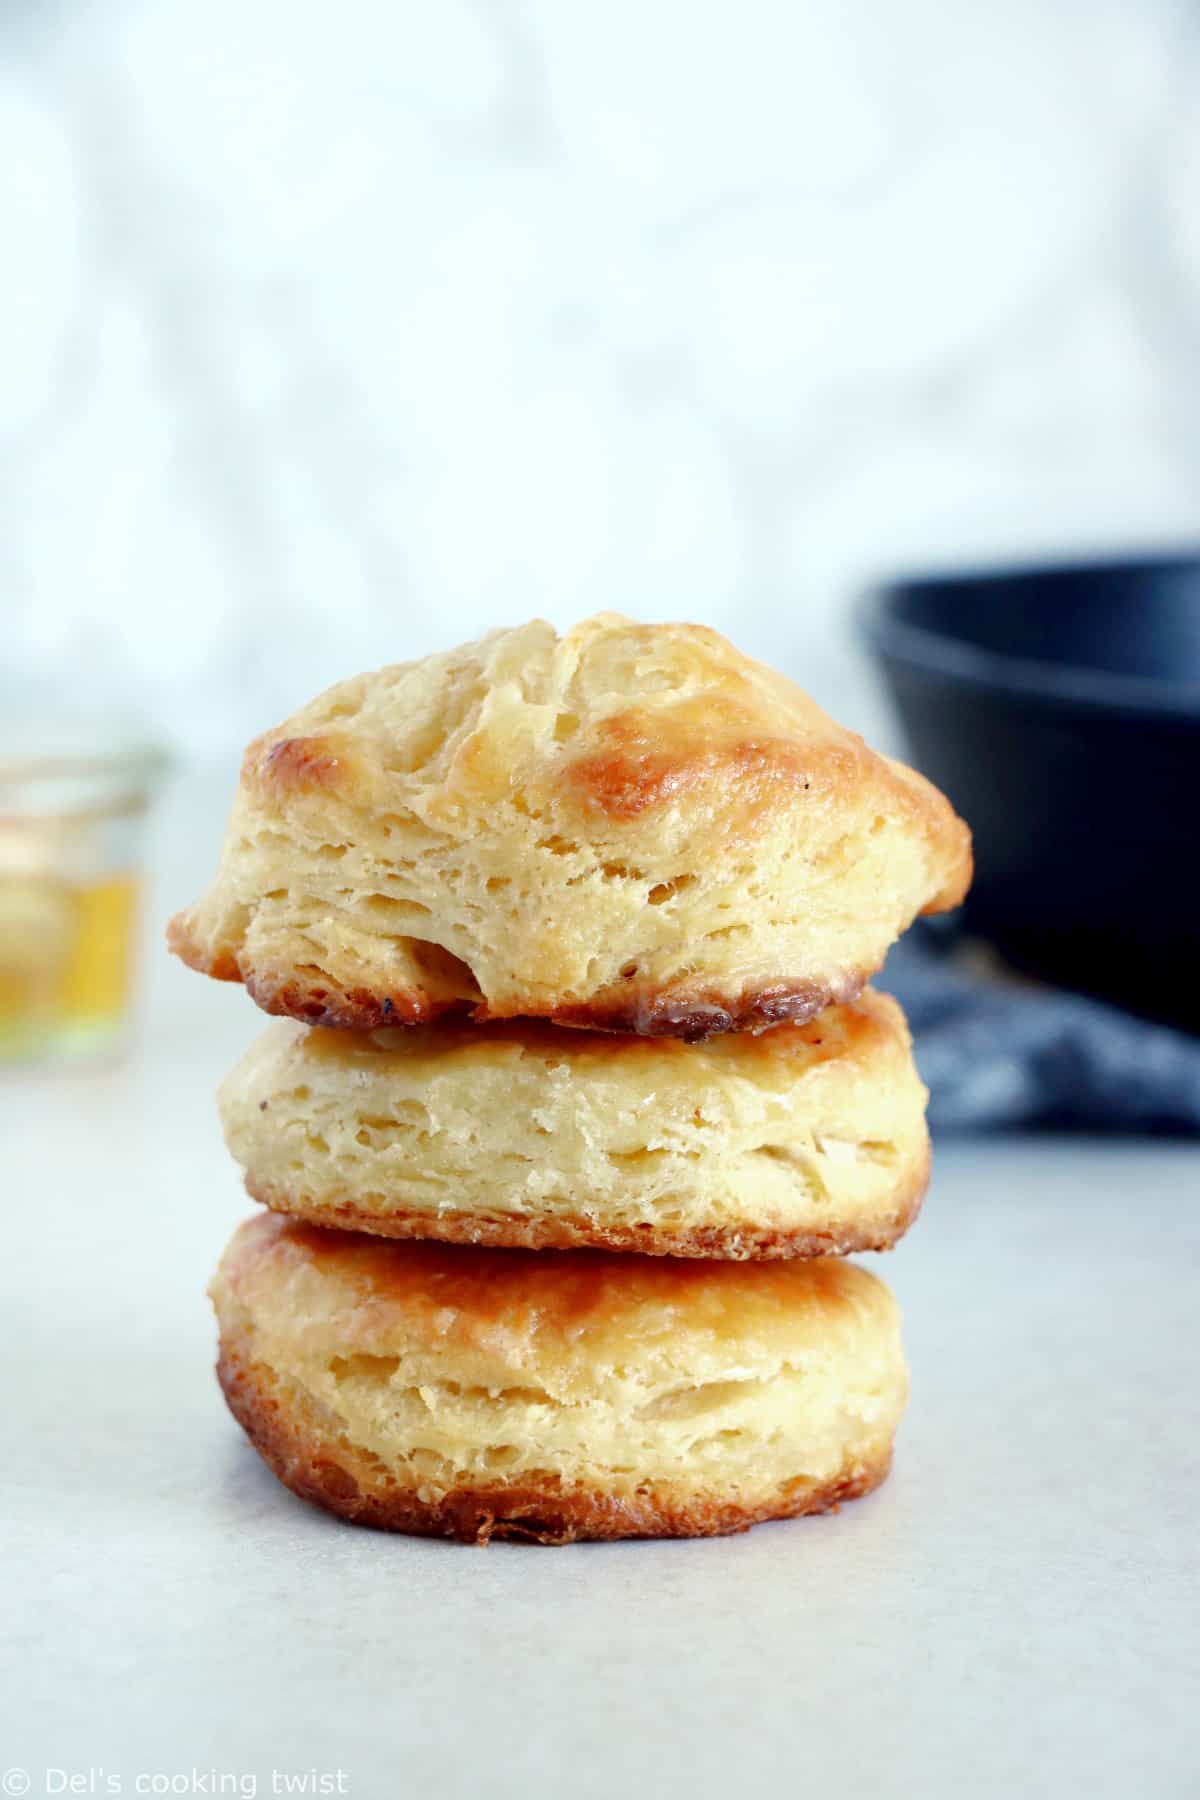 Biscuits sablés à congeler - 5 ingredients 15 minutes